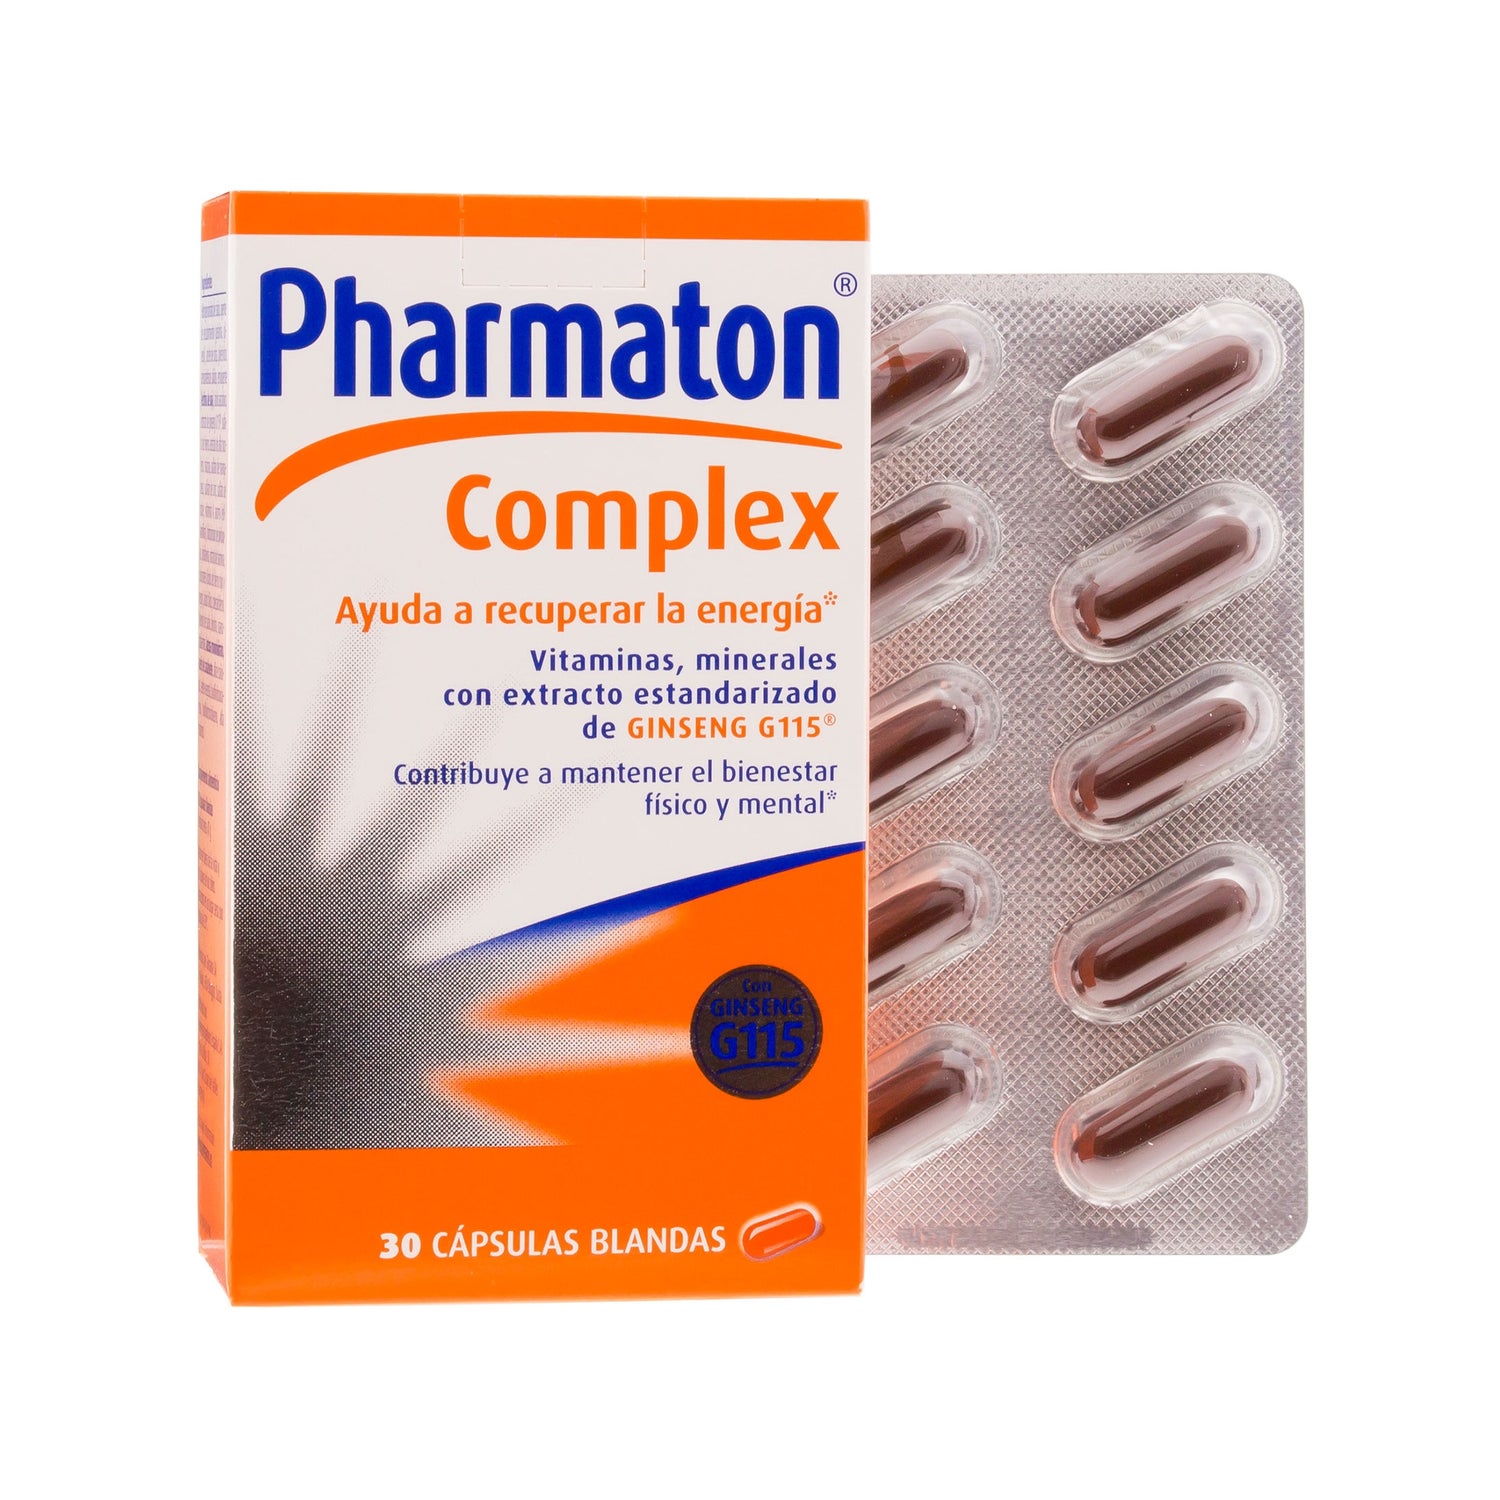 pharmaton complex 30c ps